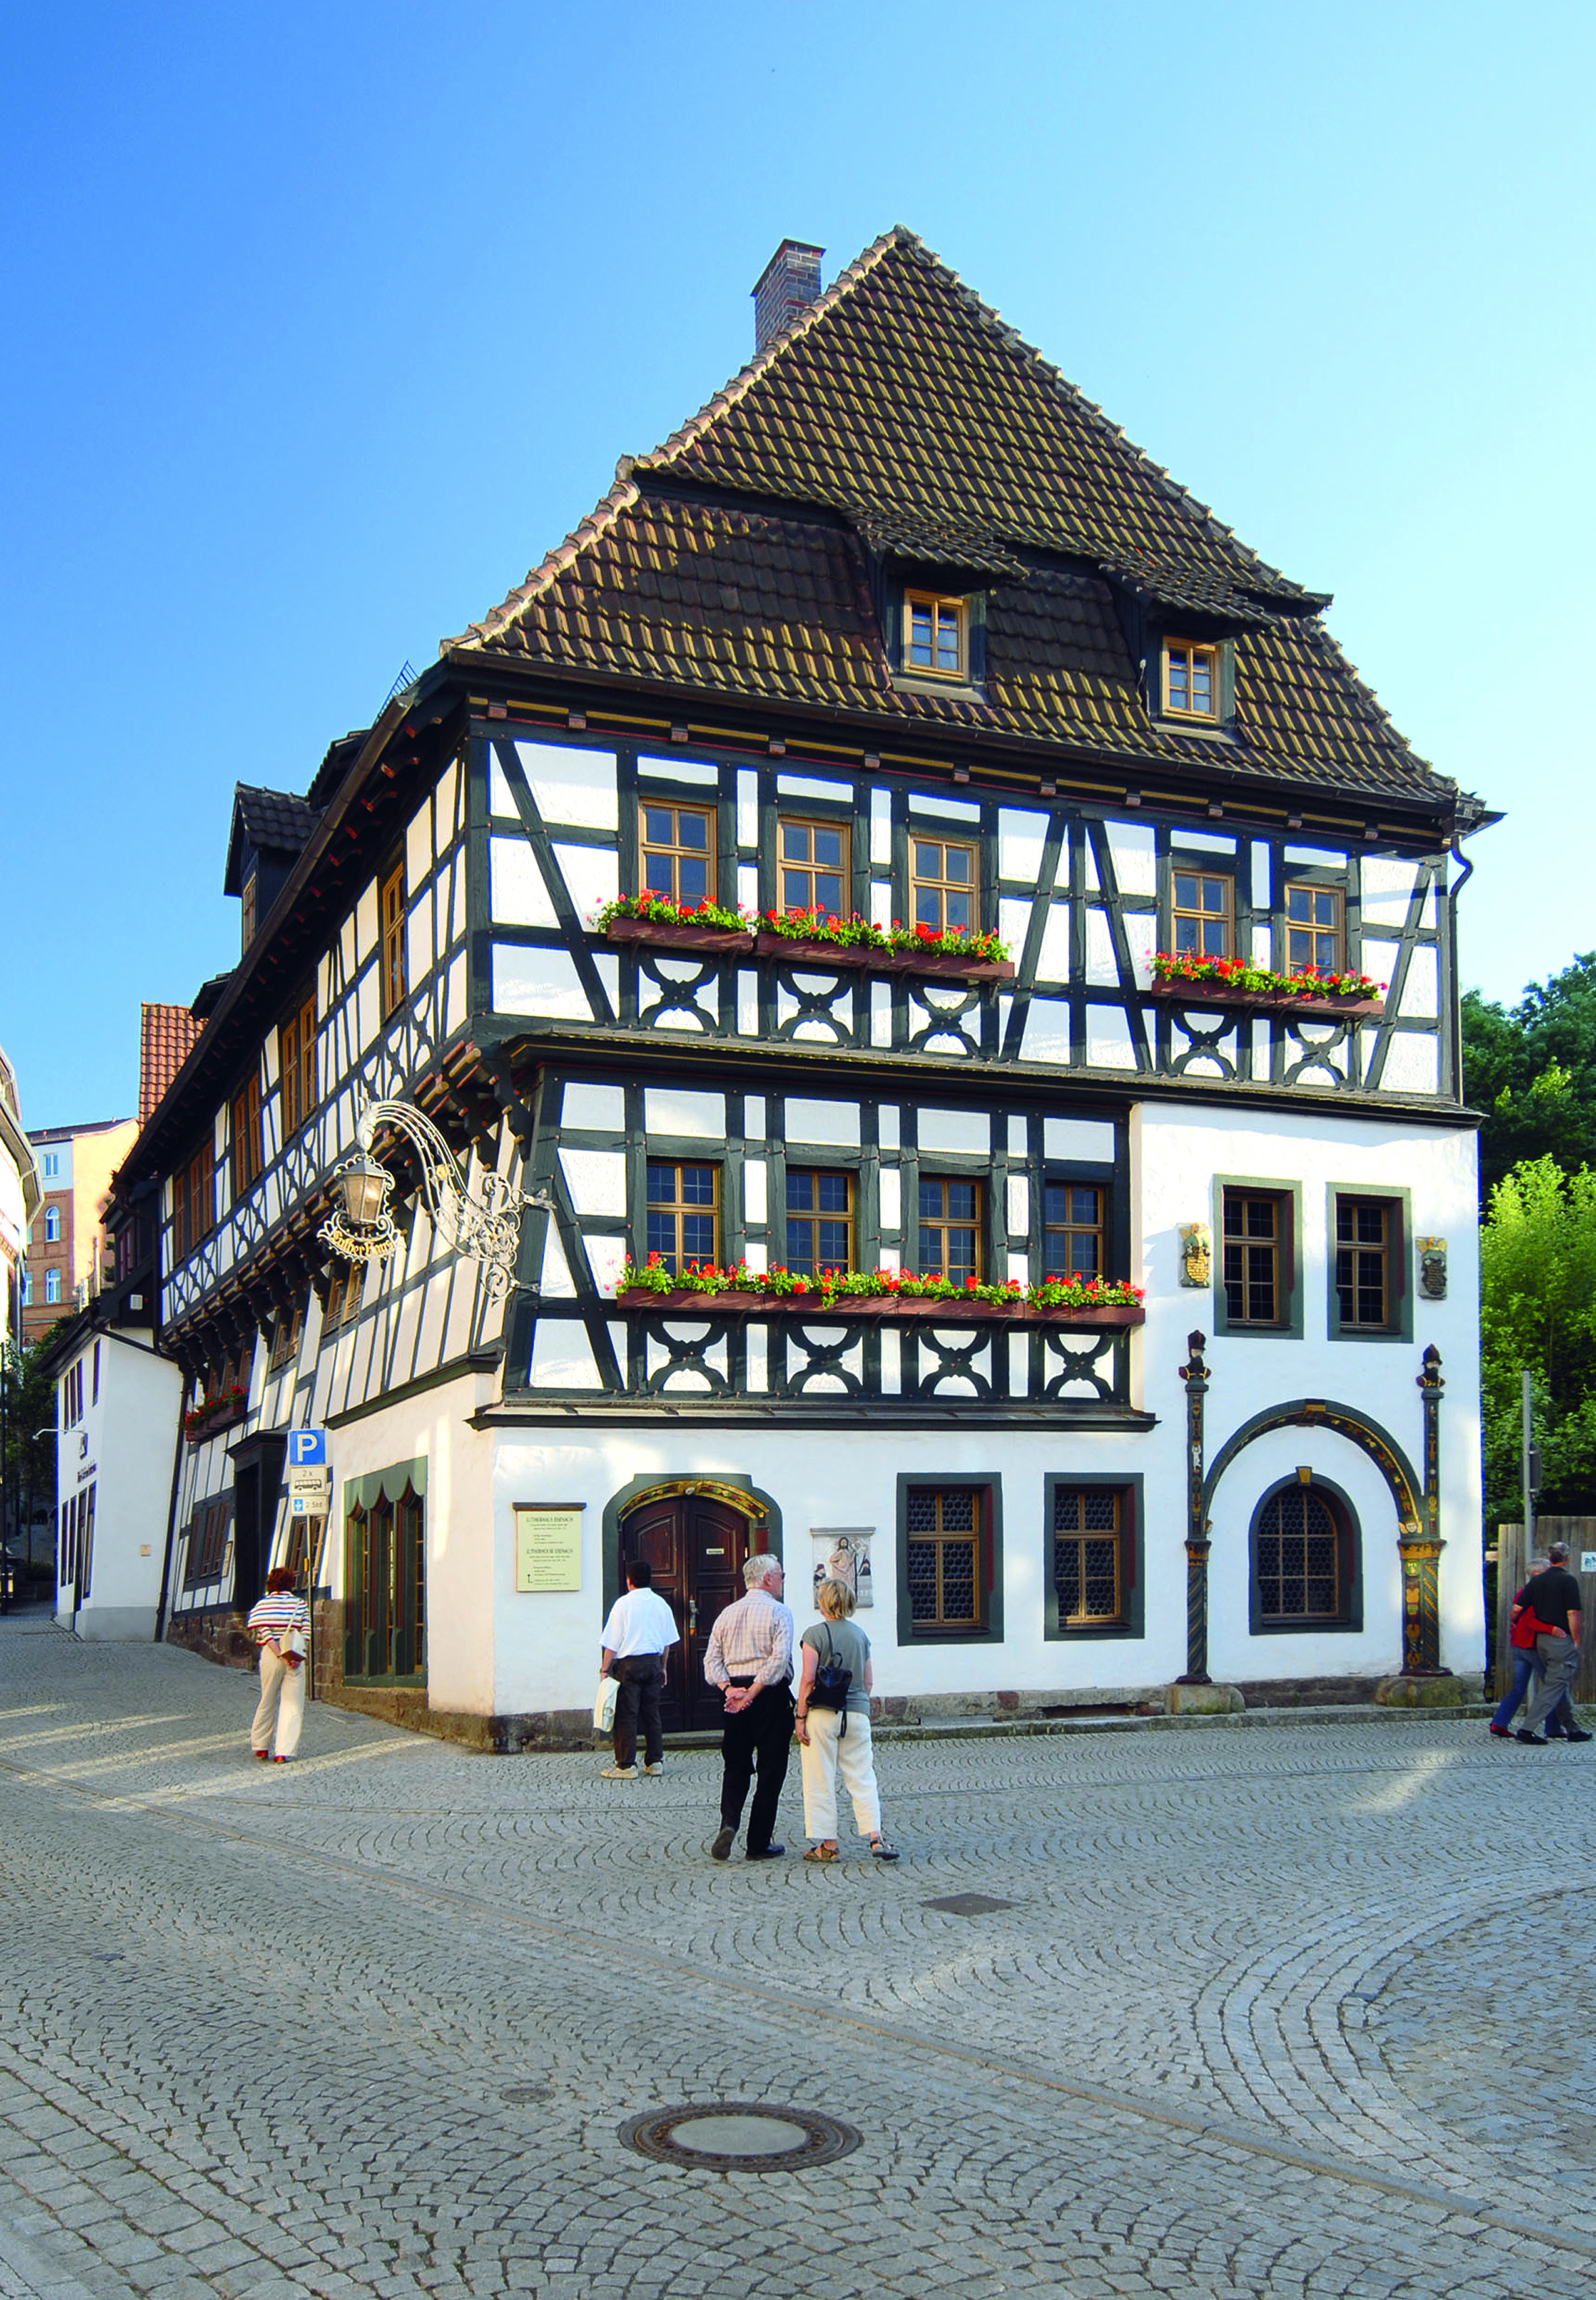 Das sehr bekannte und beeindruckende Lutherhaus ist eines der ältesten erhaltenen Fachwerkhäuser Eisenachs.
